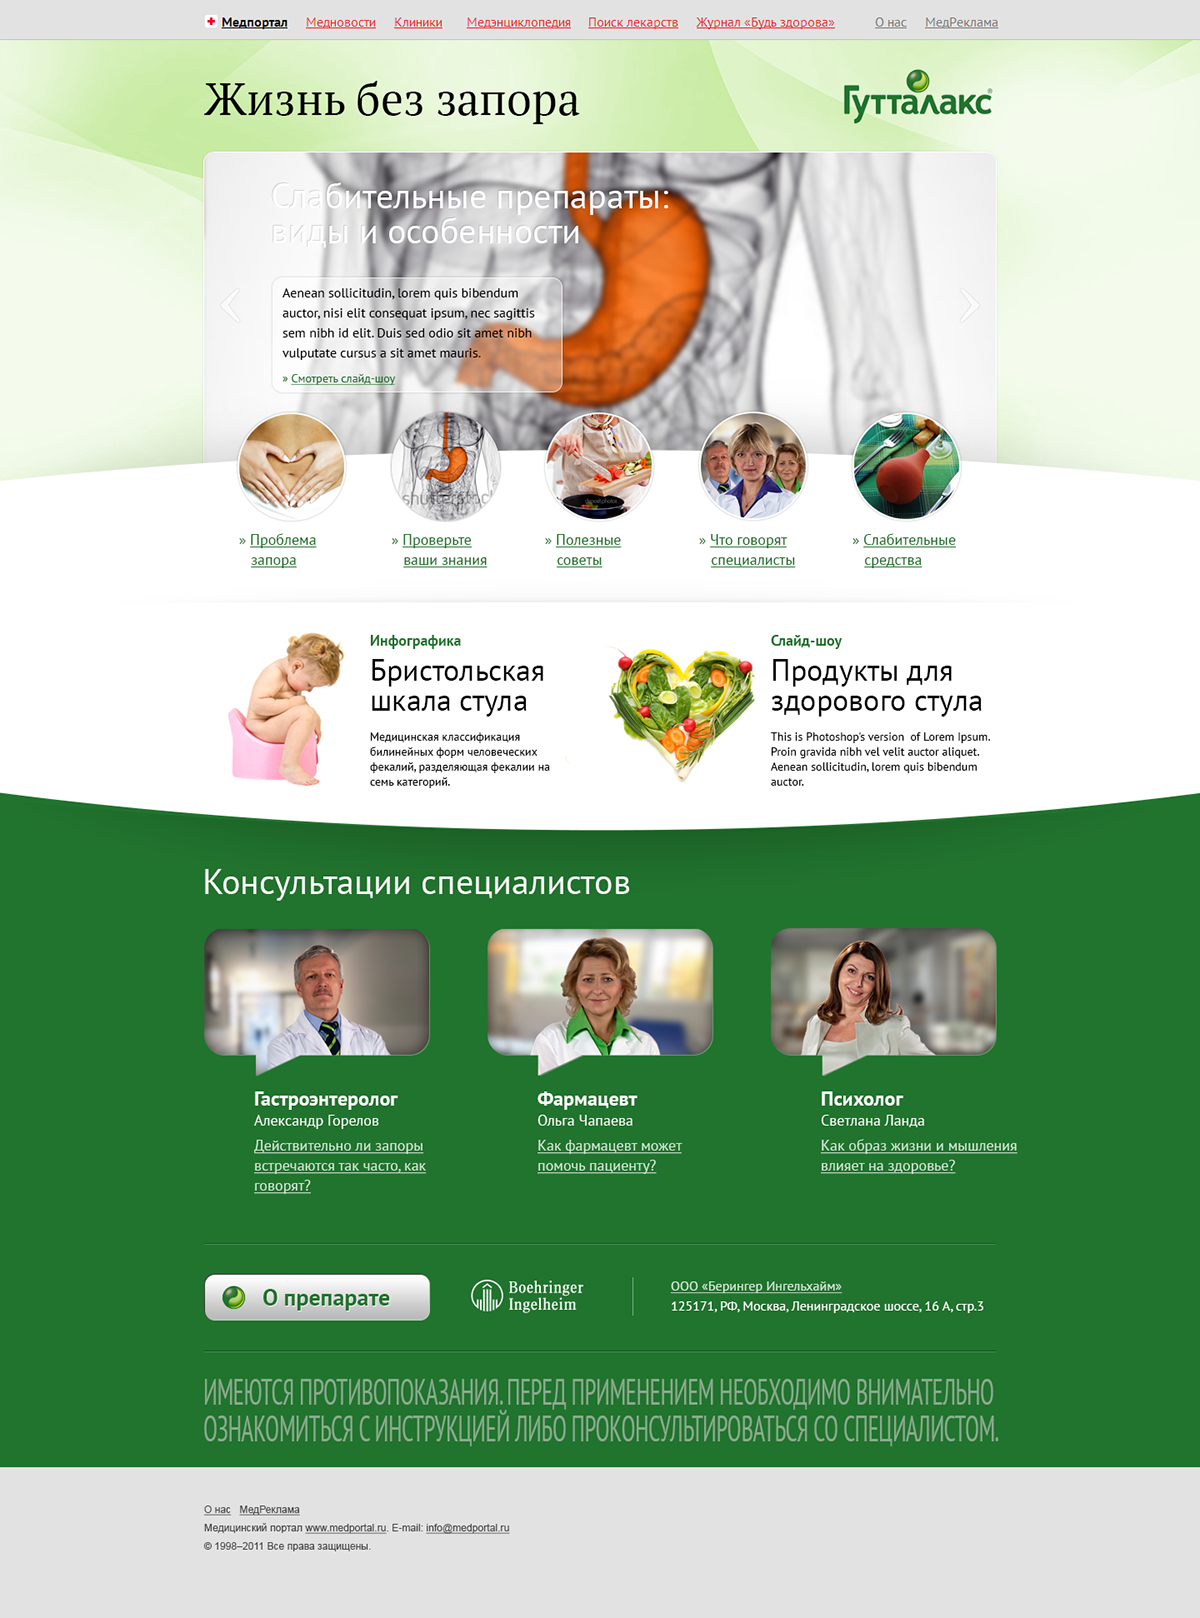 Website advertisement medicine